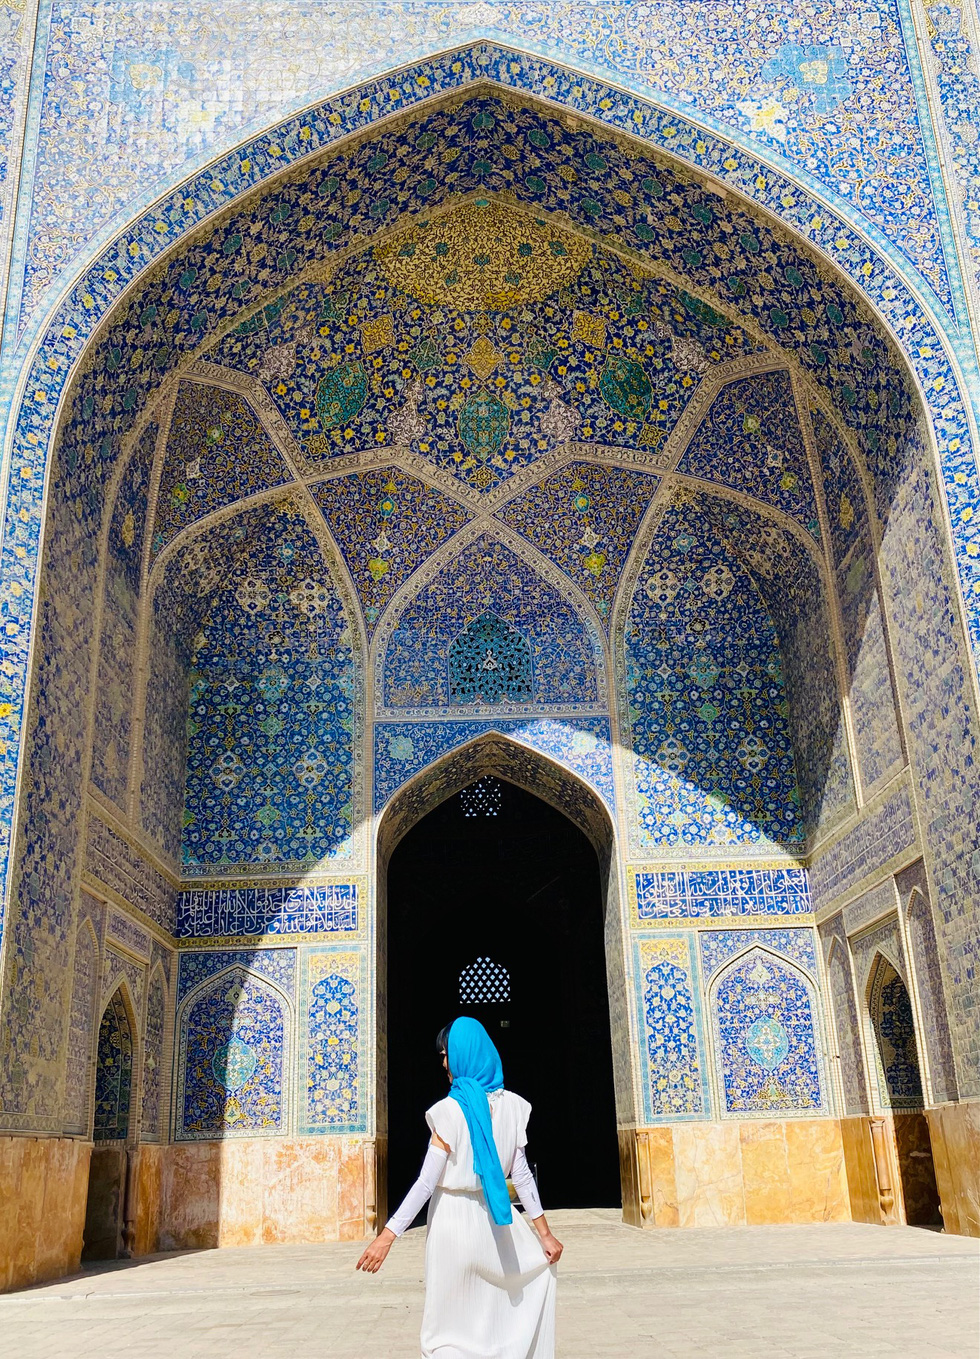 Choáng ngợp với những mái vòm cổ tích ở Iran - xứ sở Ba Tư diệu kỳ - Ảnh 12.